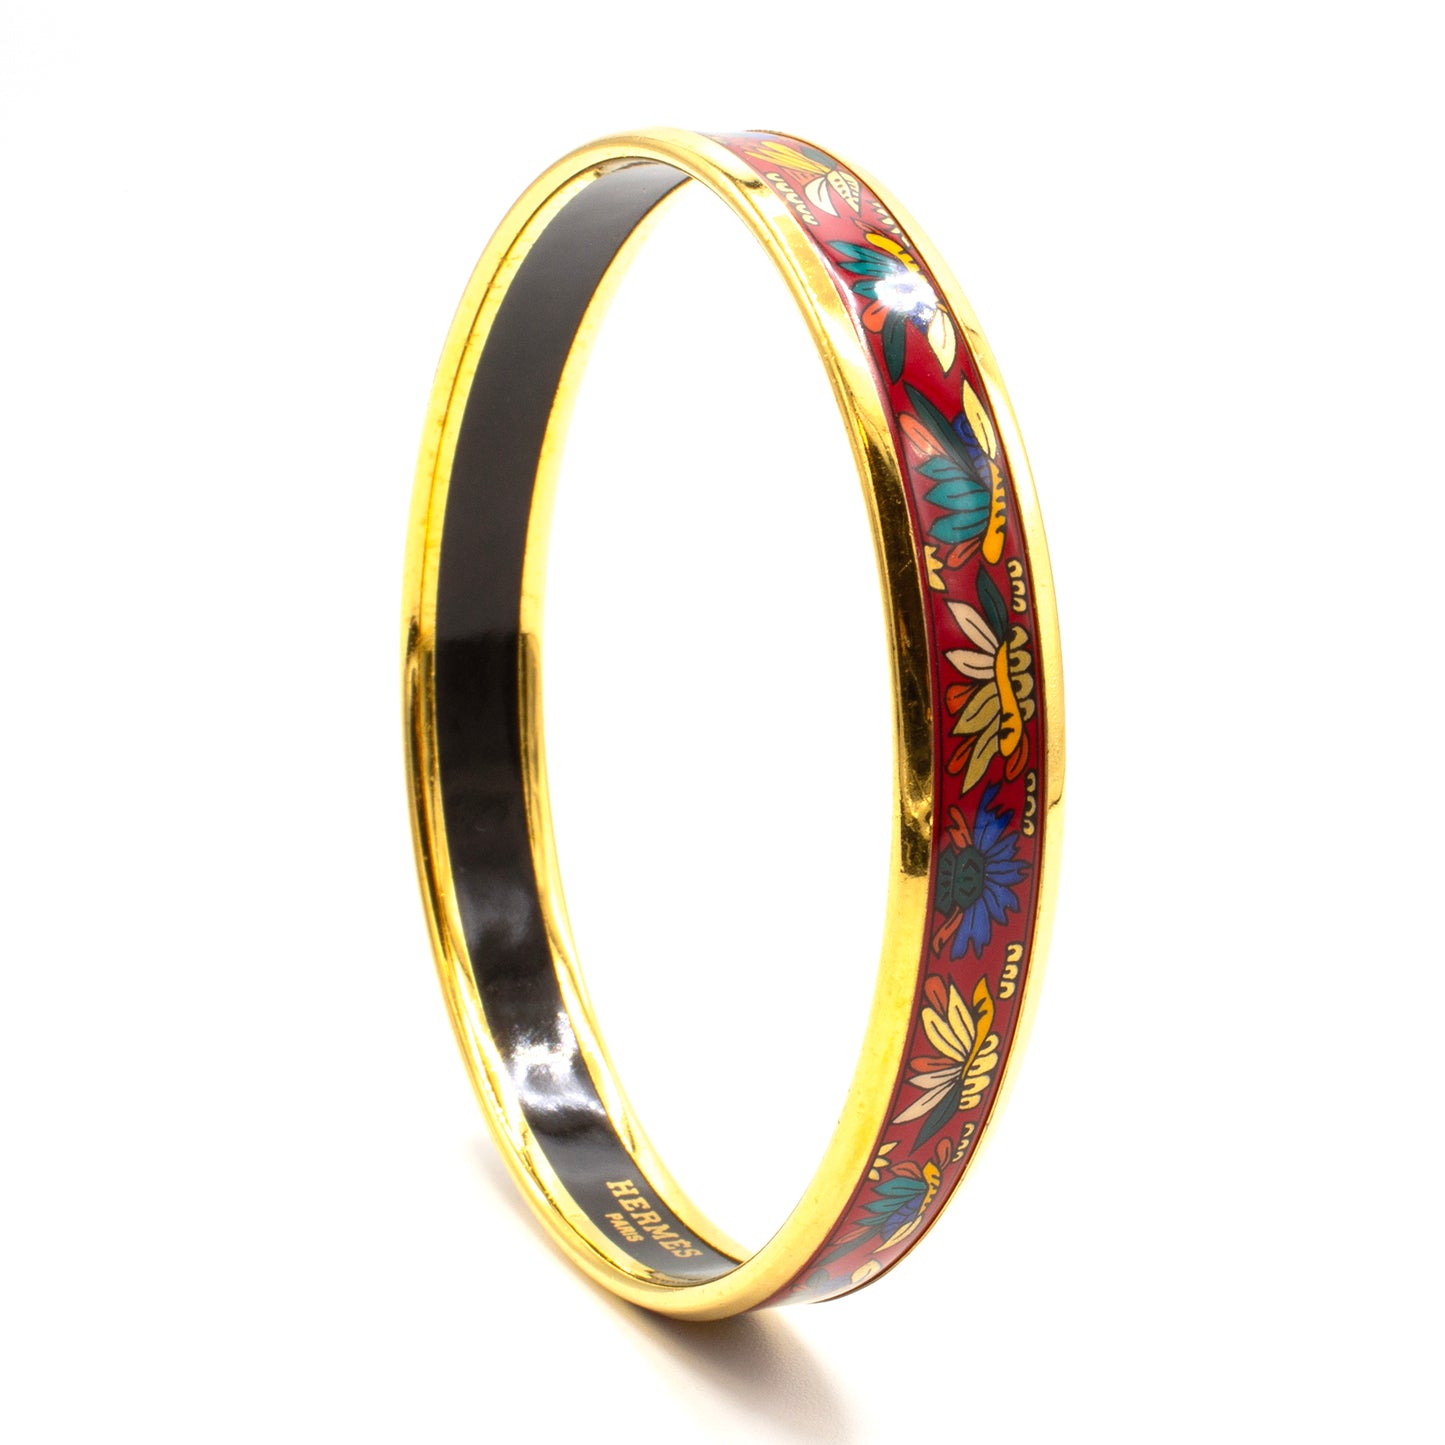 Hermès Enamel bracelet